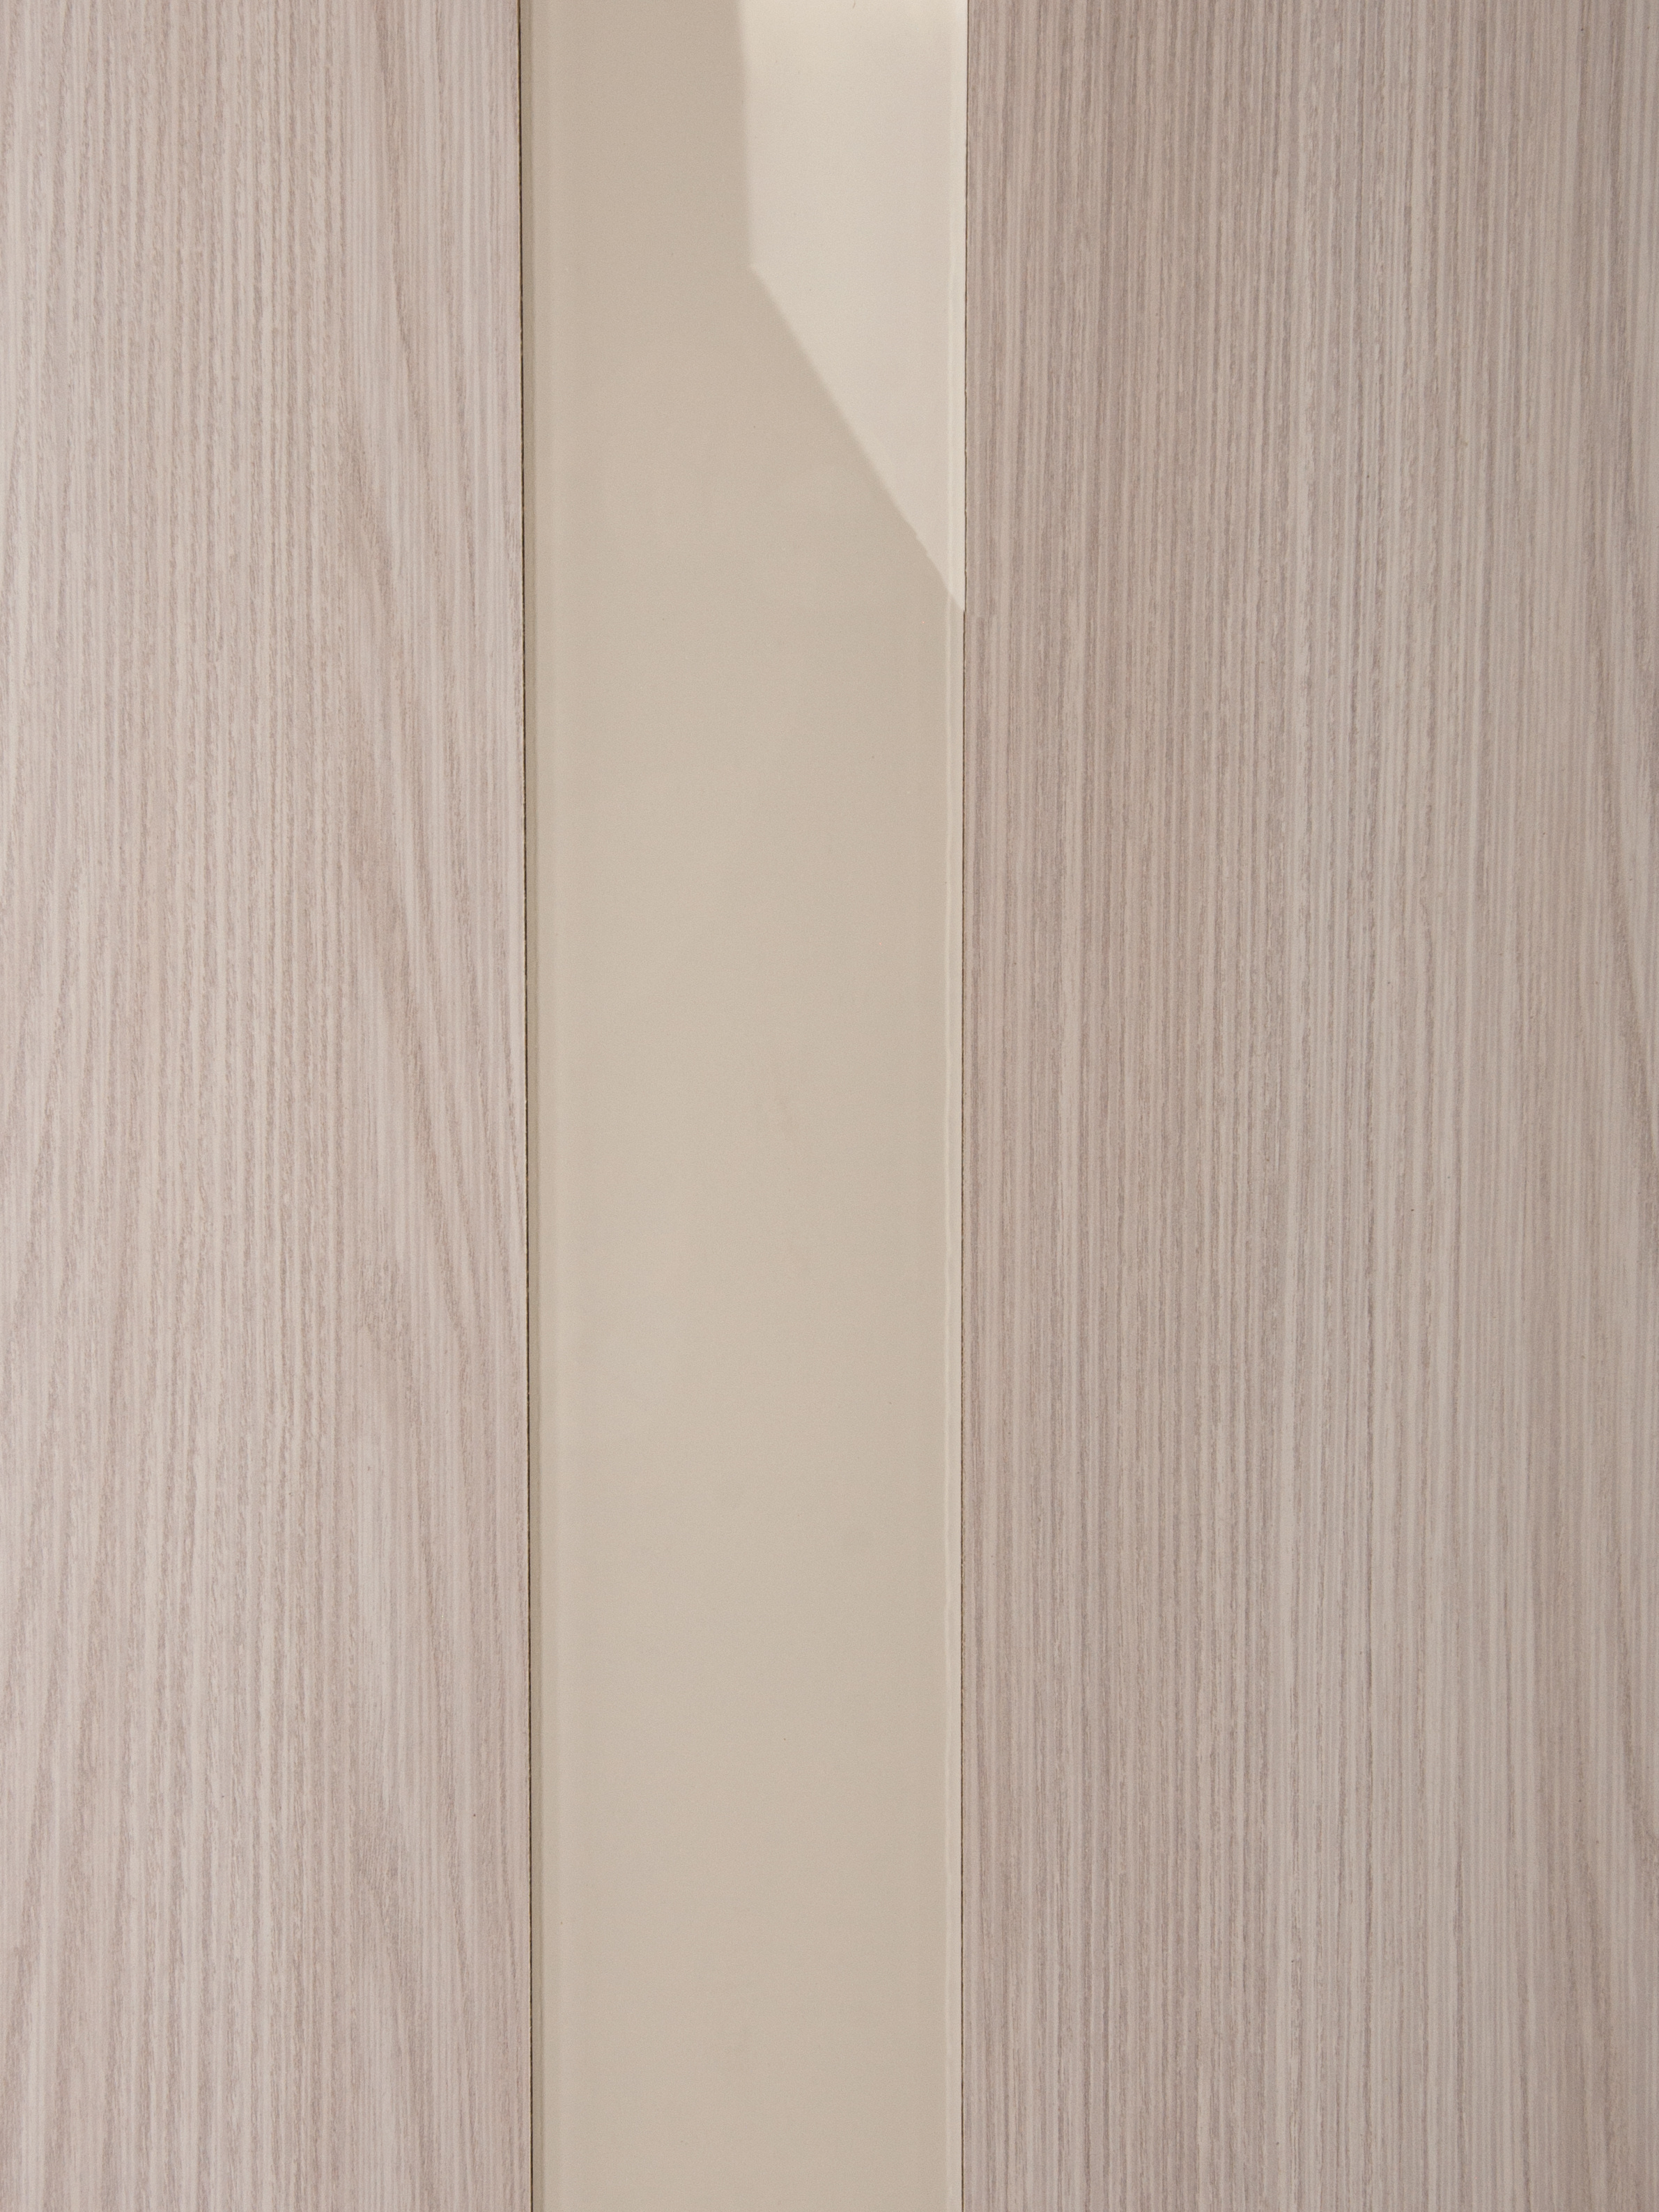 Hardflex ламинация. Дверь межкомнатная остеклённая Трилло 90x200 см, Hardflex, цвет ясень.